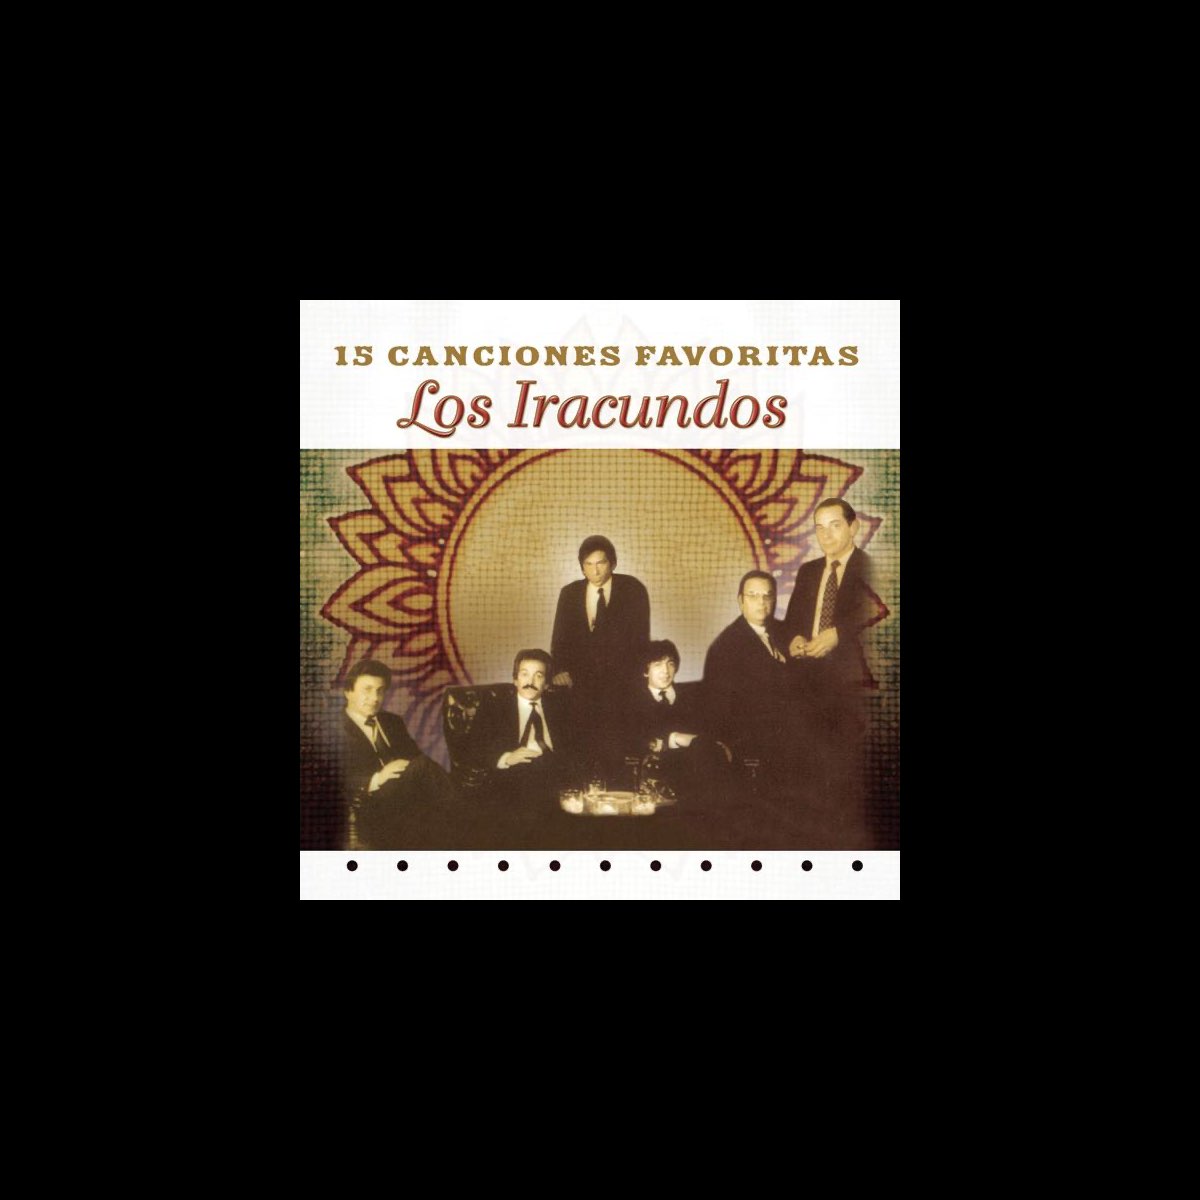 Los Iracundos: 15 Canciones Favoritas by Los Iracundos on Apple Music